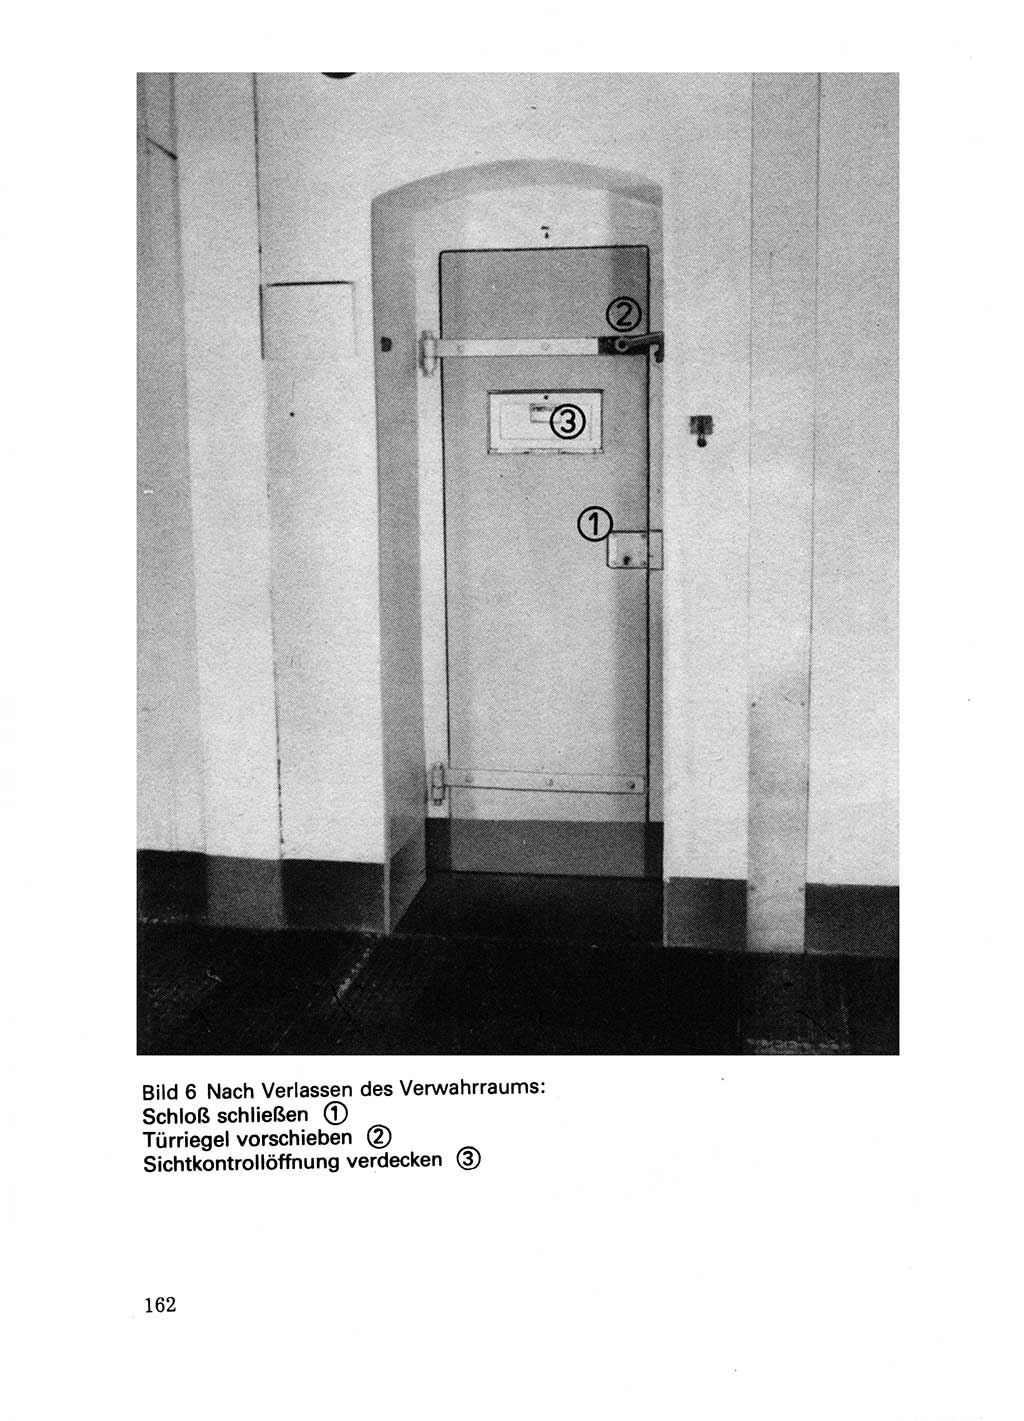 Handbuch für operative Dienste, Abteilung Strafvollzug (SV) [Ministerium des Innern (MdI) Deutsche Demokratische Republik (DDR)] 1981, Seite 162 (Hb. op. D. Abt. SV MdI DDR 1981, S. 162)